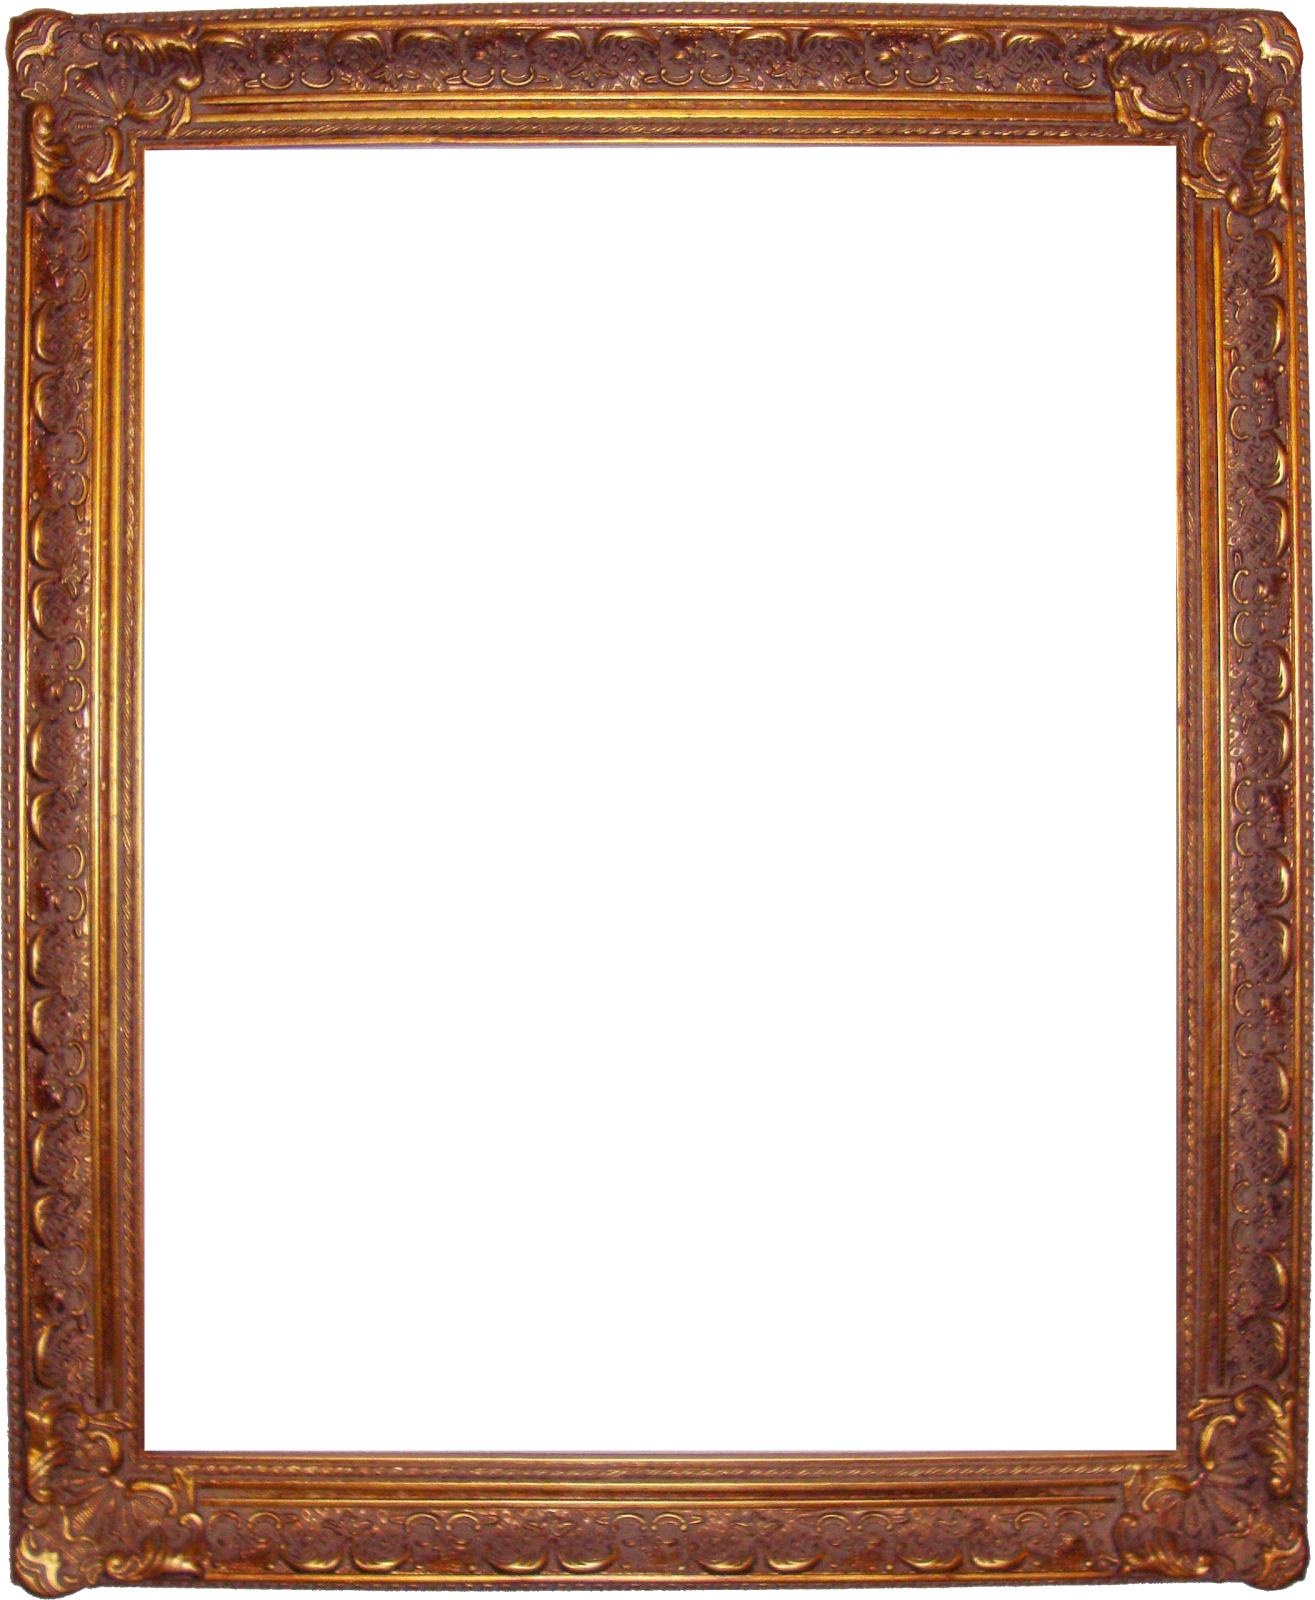 Fancy Frame Download Transparent PNG Image